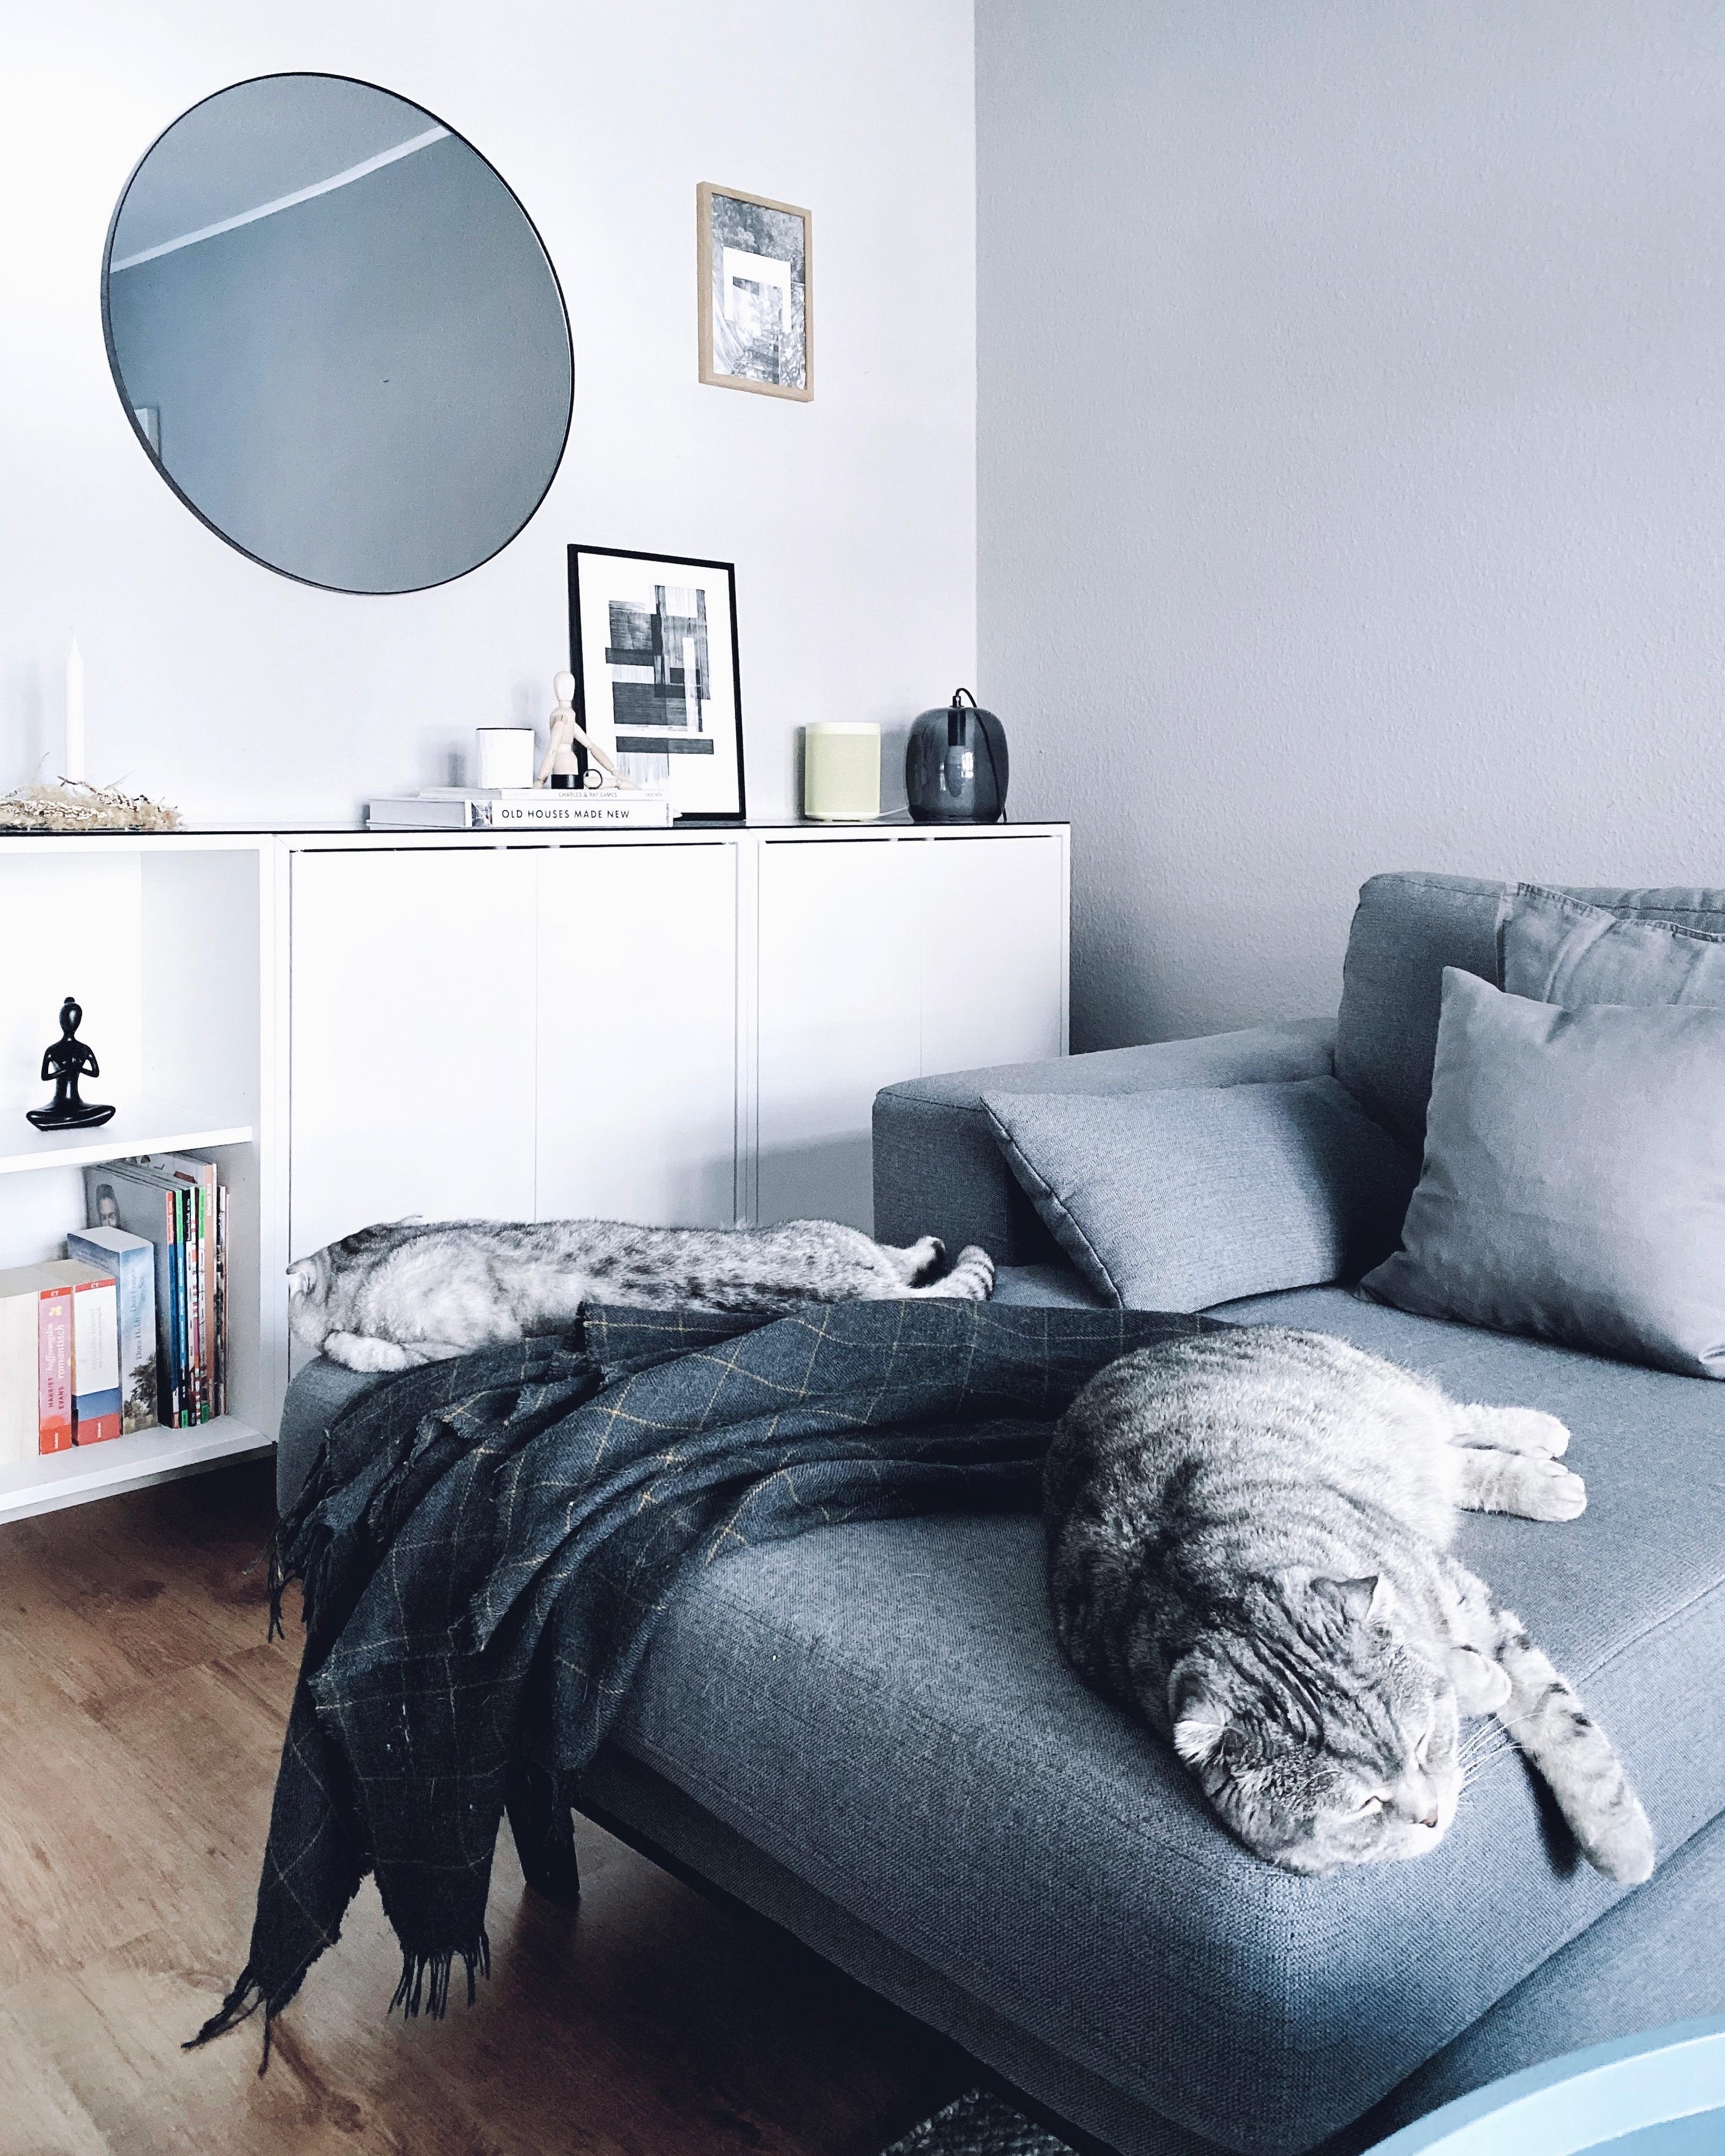 So ein Katzenleben muss man haben 😊
#interior #nordicroom #nordichome #scandistyle #scandinavianliving #cozyplace